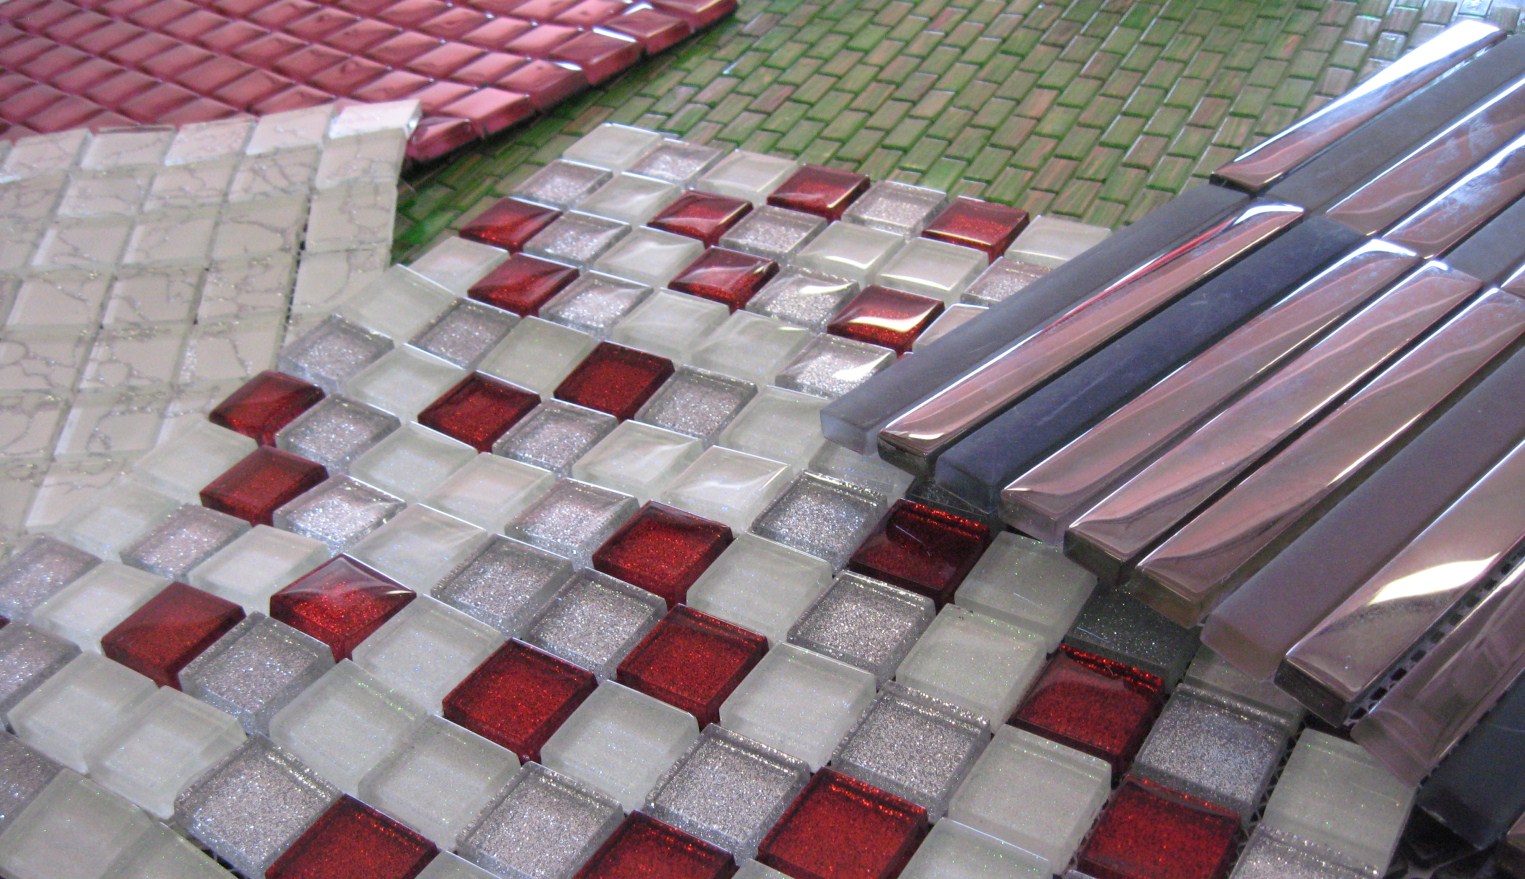 Negli ultimi anni infatti, i mosaici vengono applicati sempre più frequentemente in numerose situazioni progettuali sia in ambito privato che pubblico come ad esempio bagni, saune e bagni turchi,